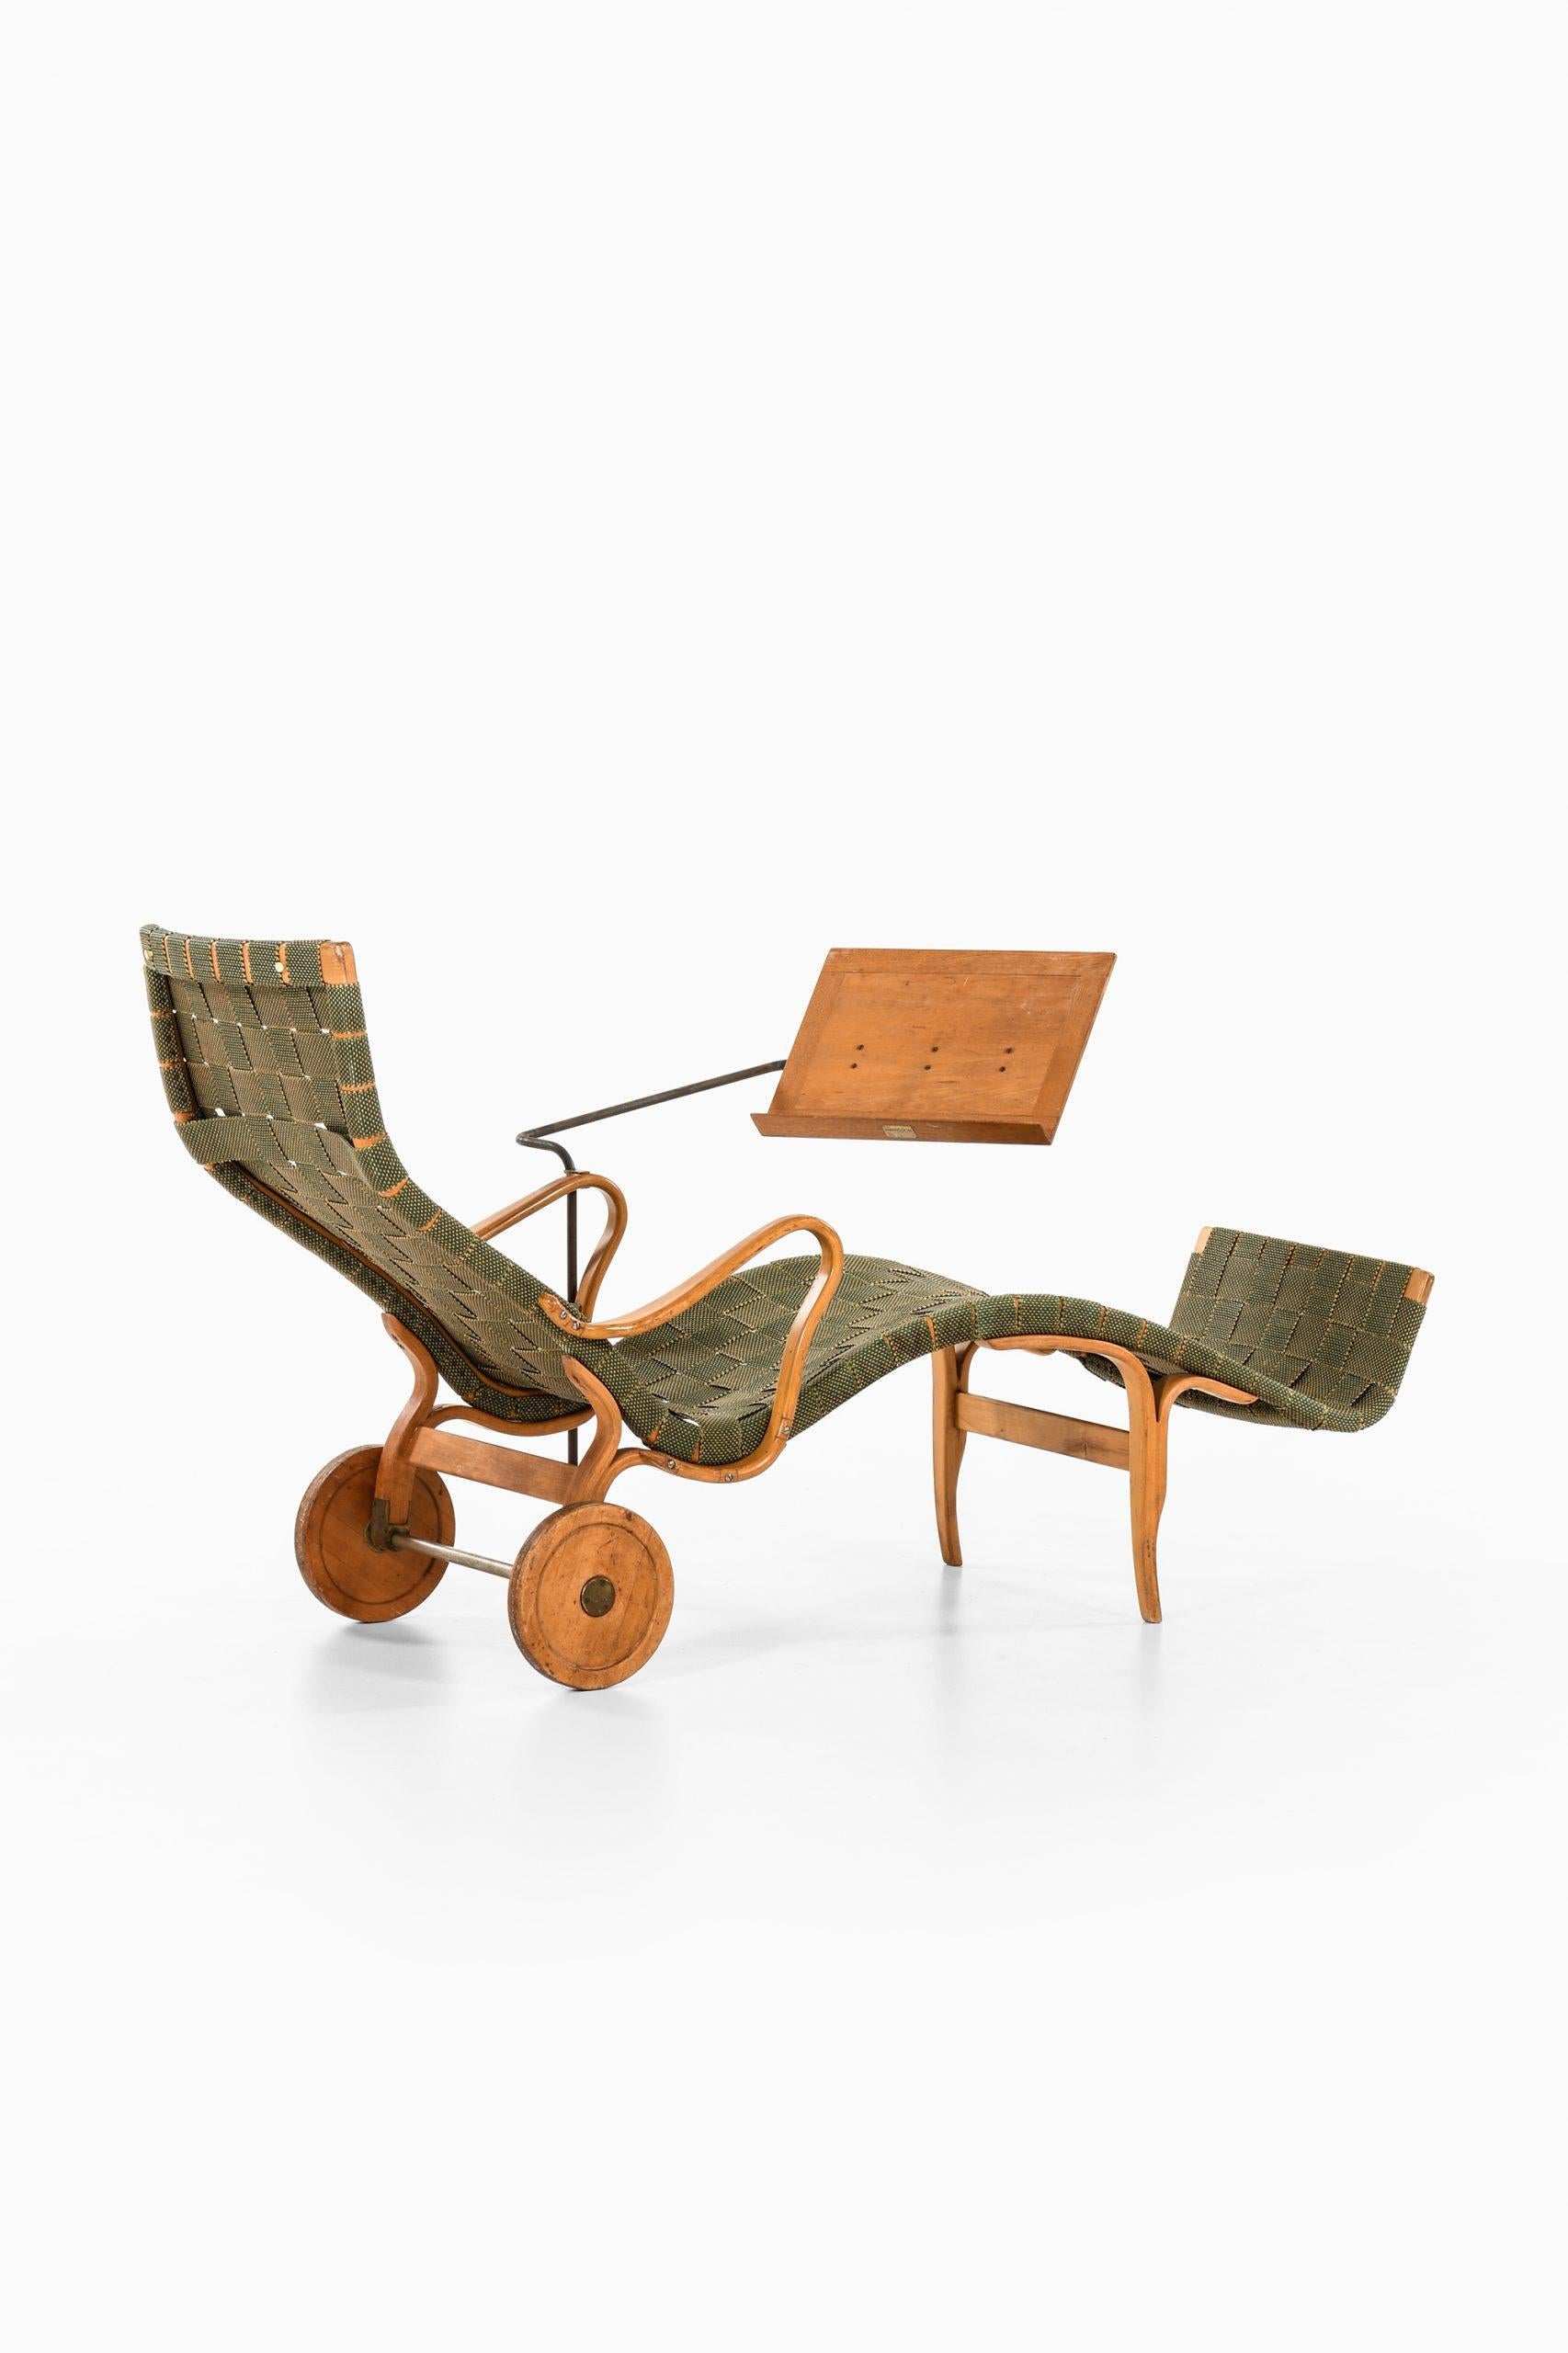 Bruno Mathsson Lounge Chair Model Pernilla Produced by Karl Mathsson in Värnamo 2